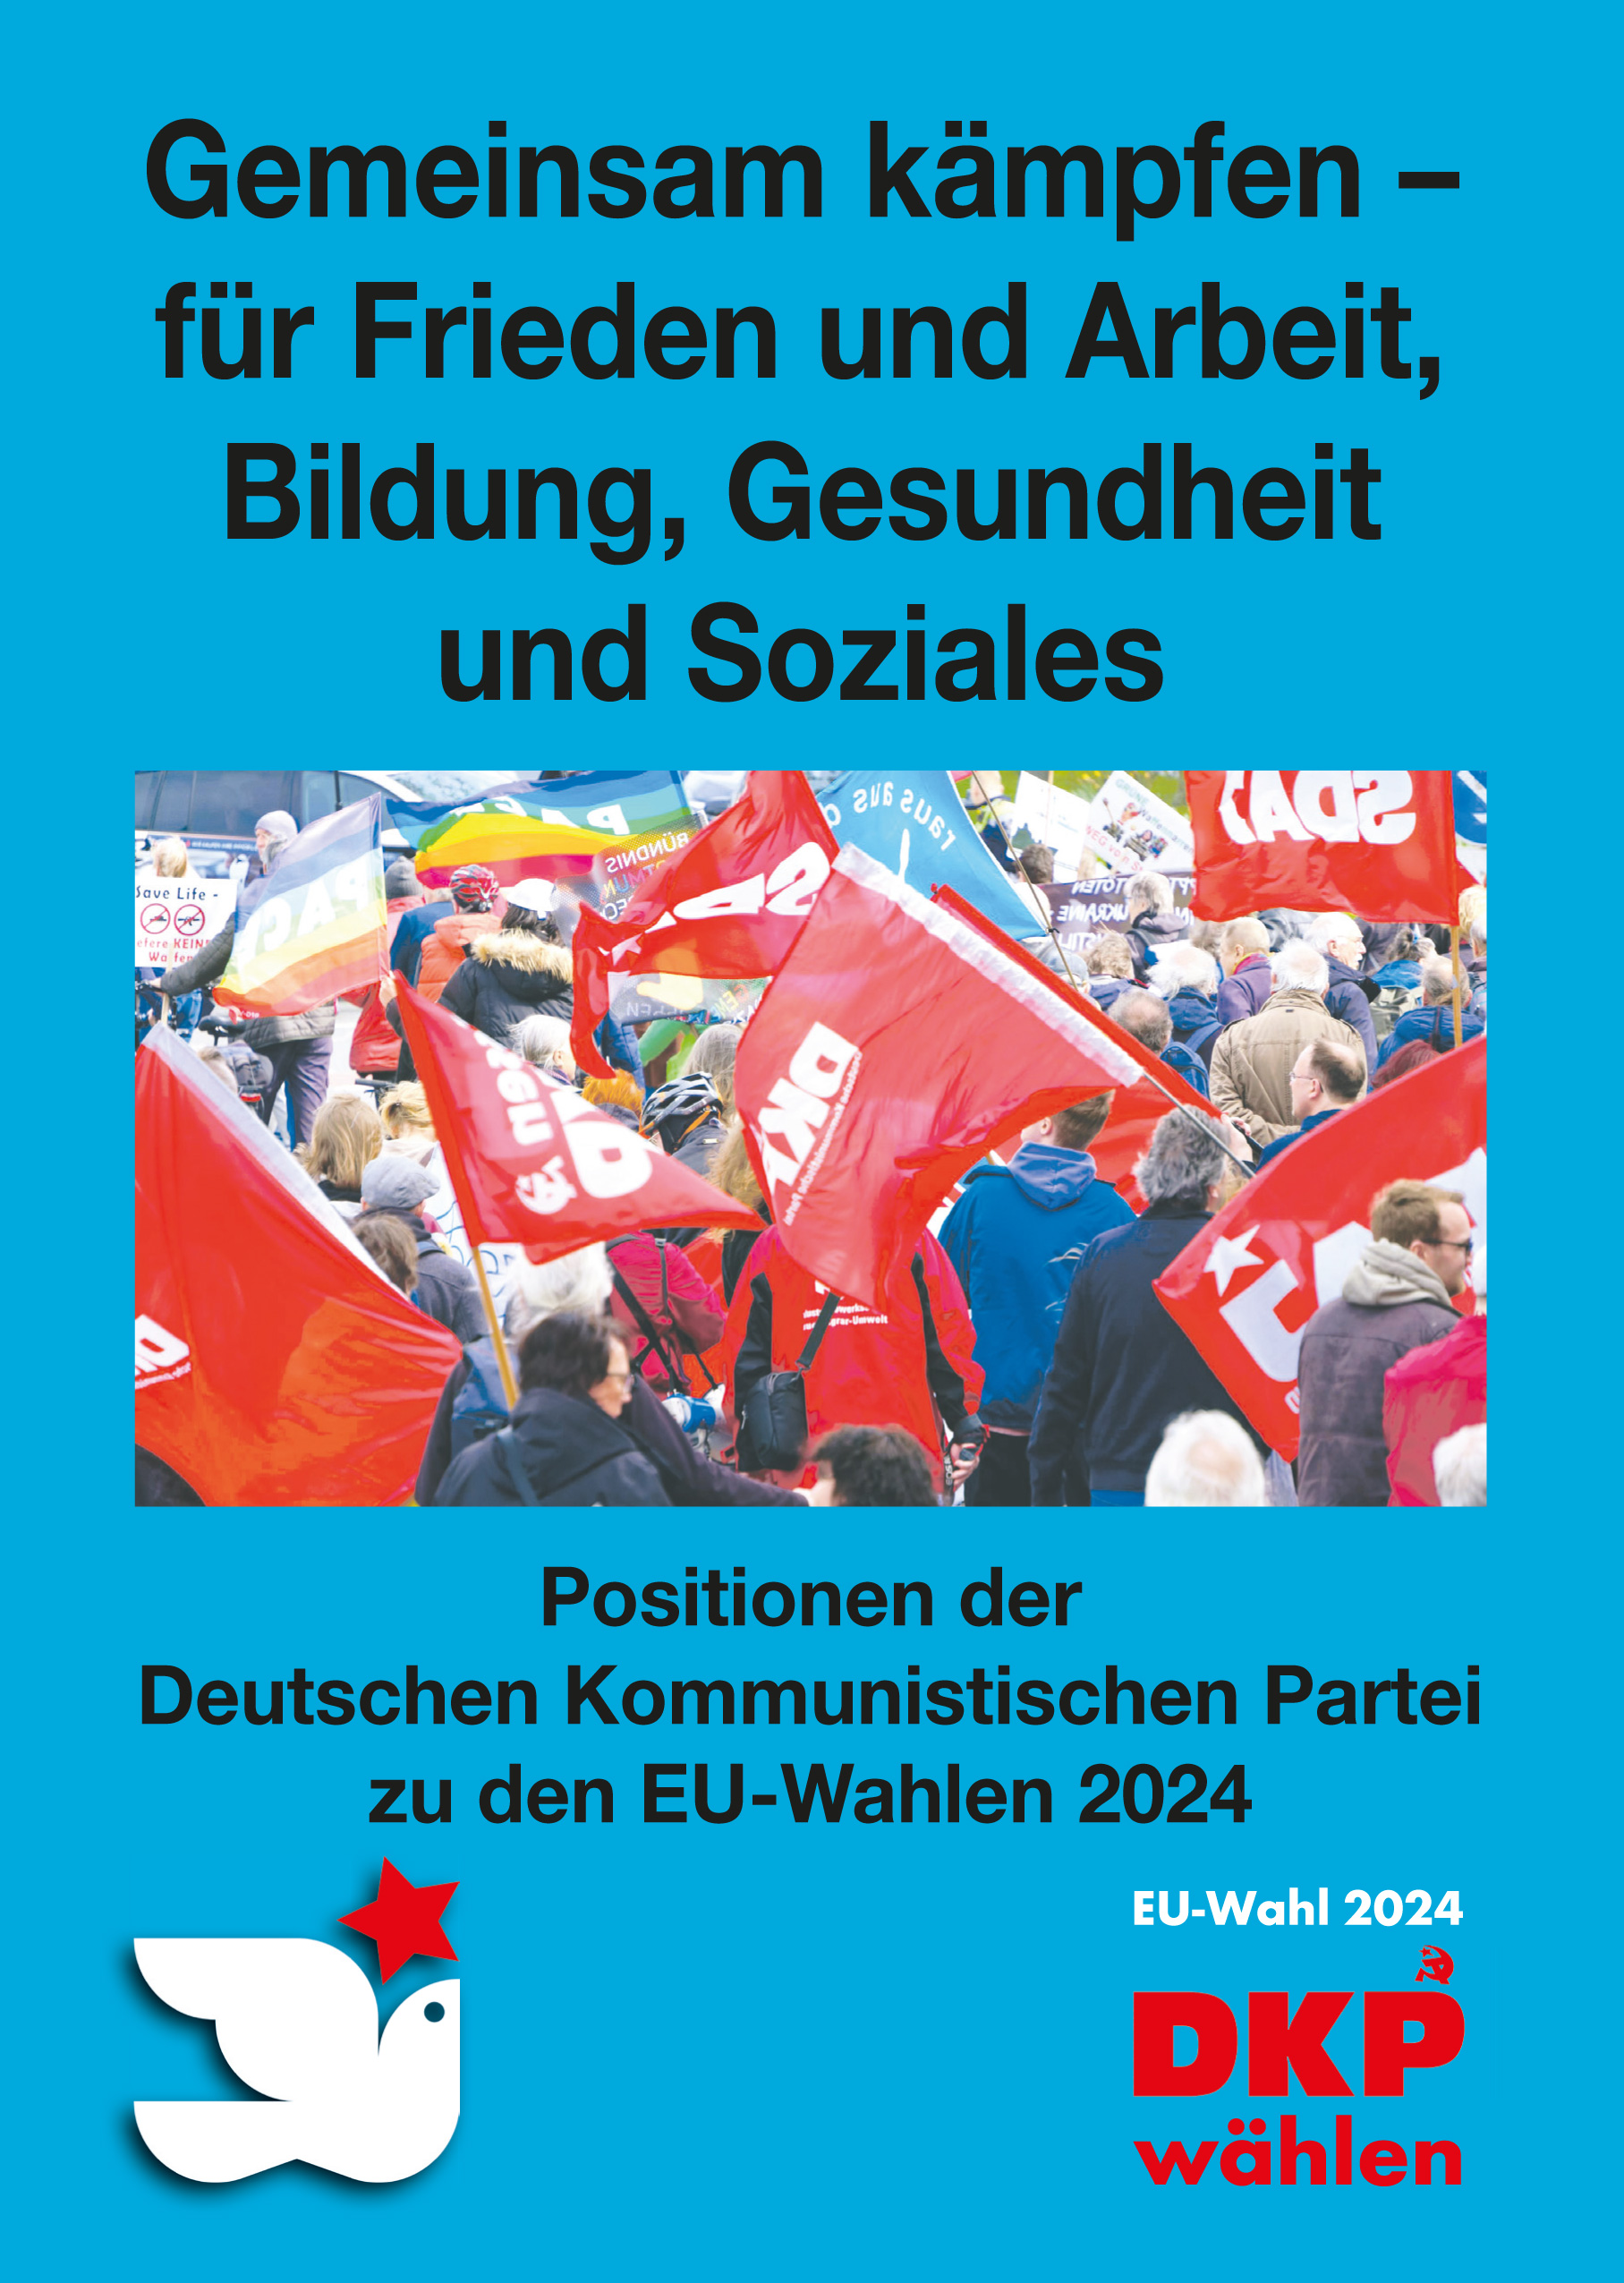 DKP-Information EU-Wahl 2024: Gemeinsam kämpfen – für Frieden und Arbeit, Bildung, Gesundheit und Soziales! (PDF, 3.52 MB)